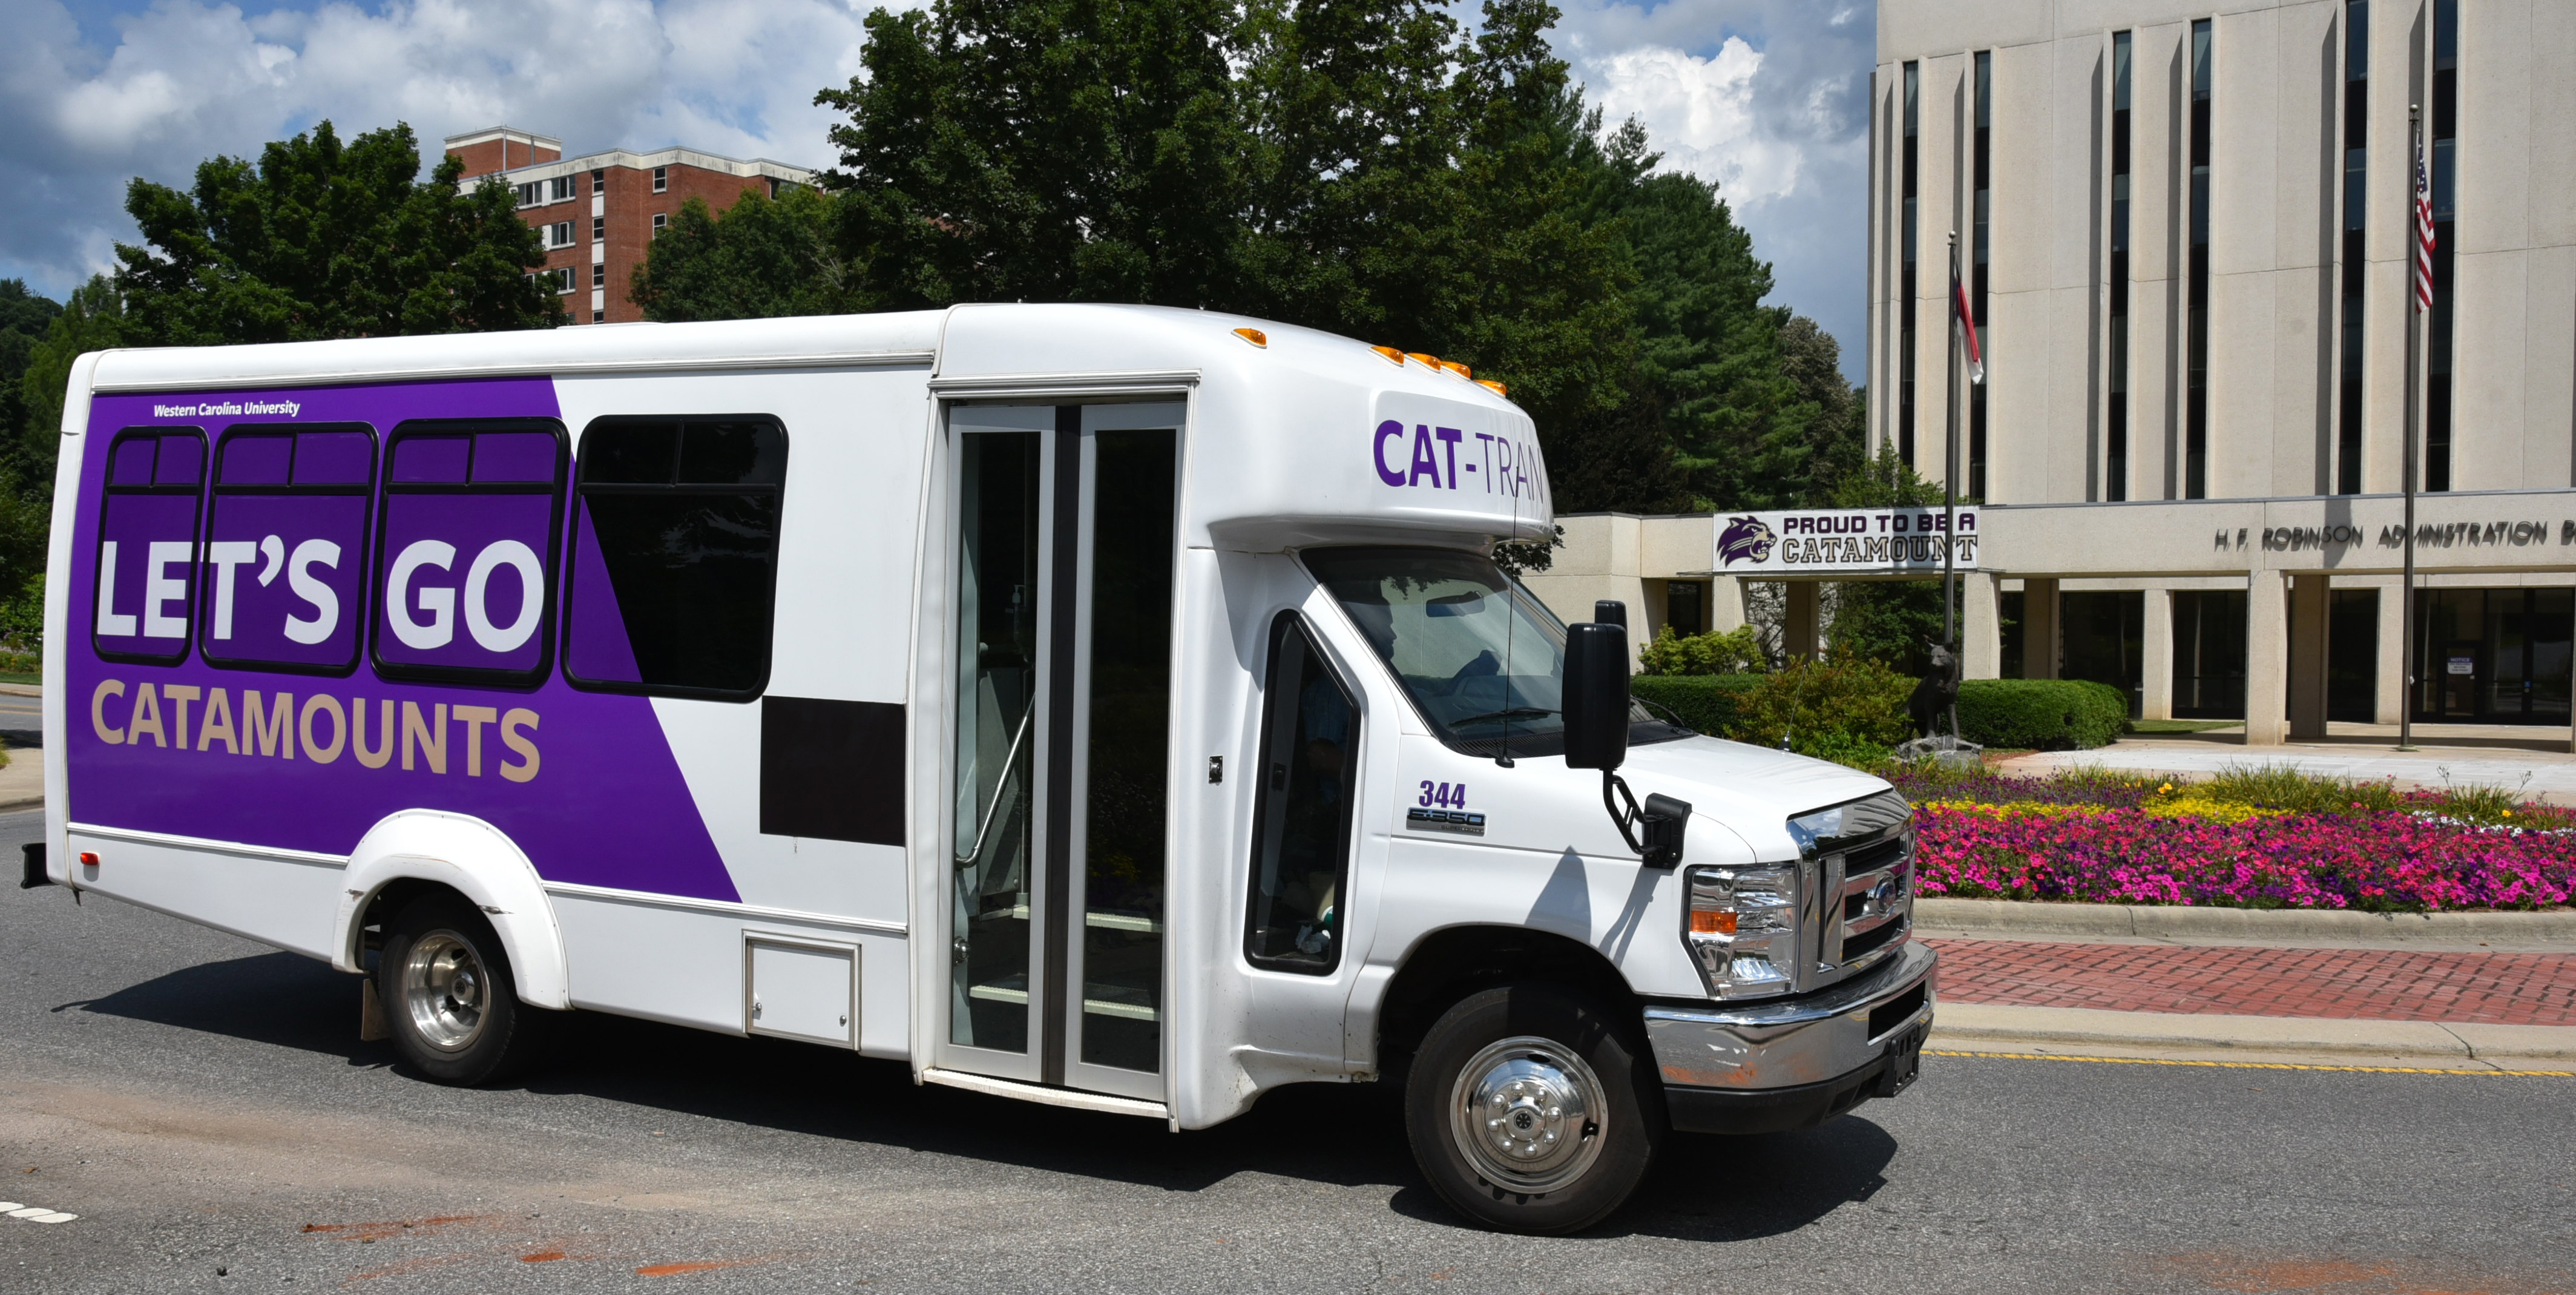 cat-tran bus